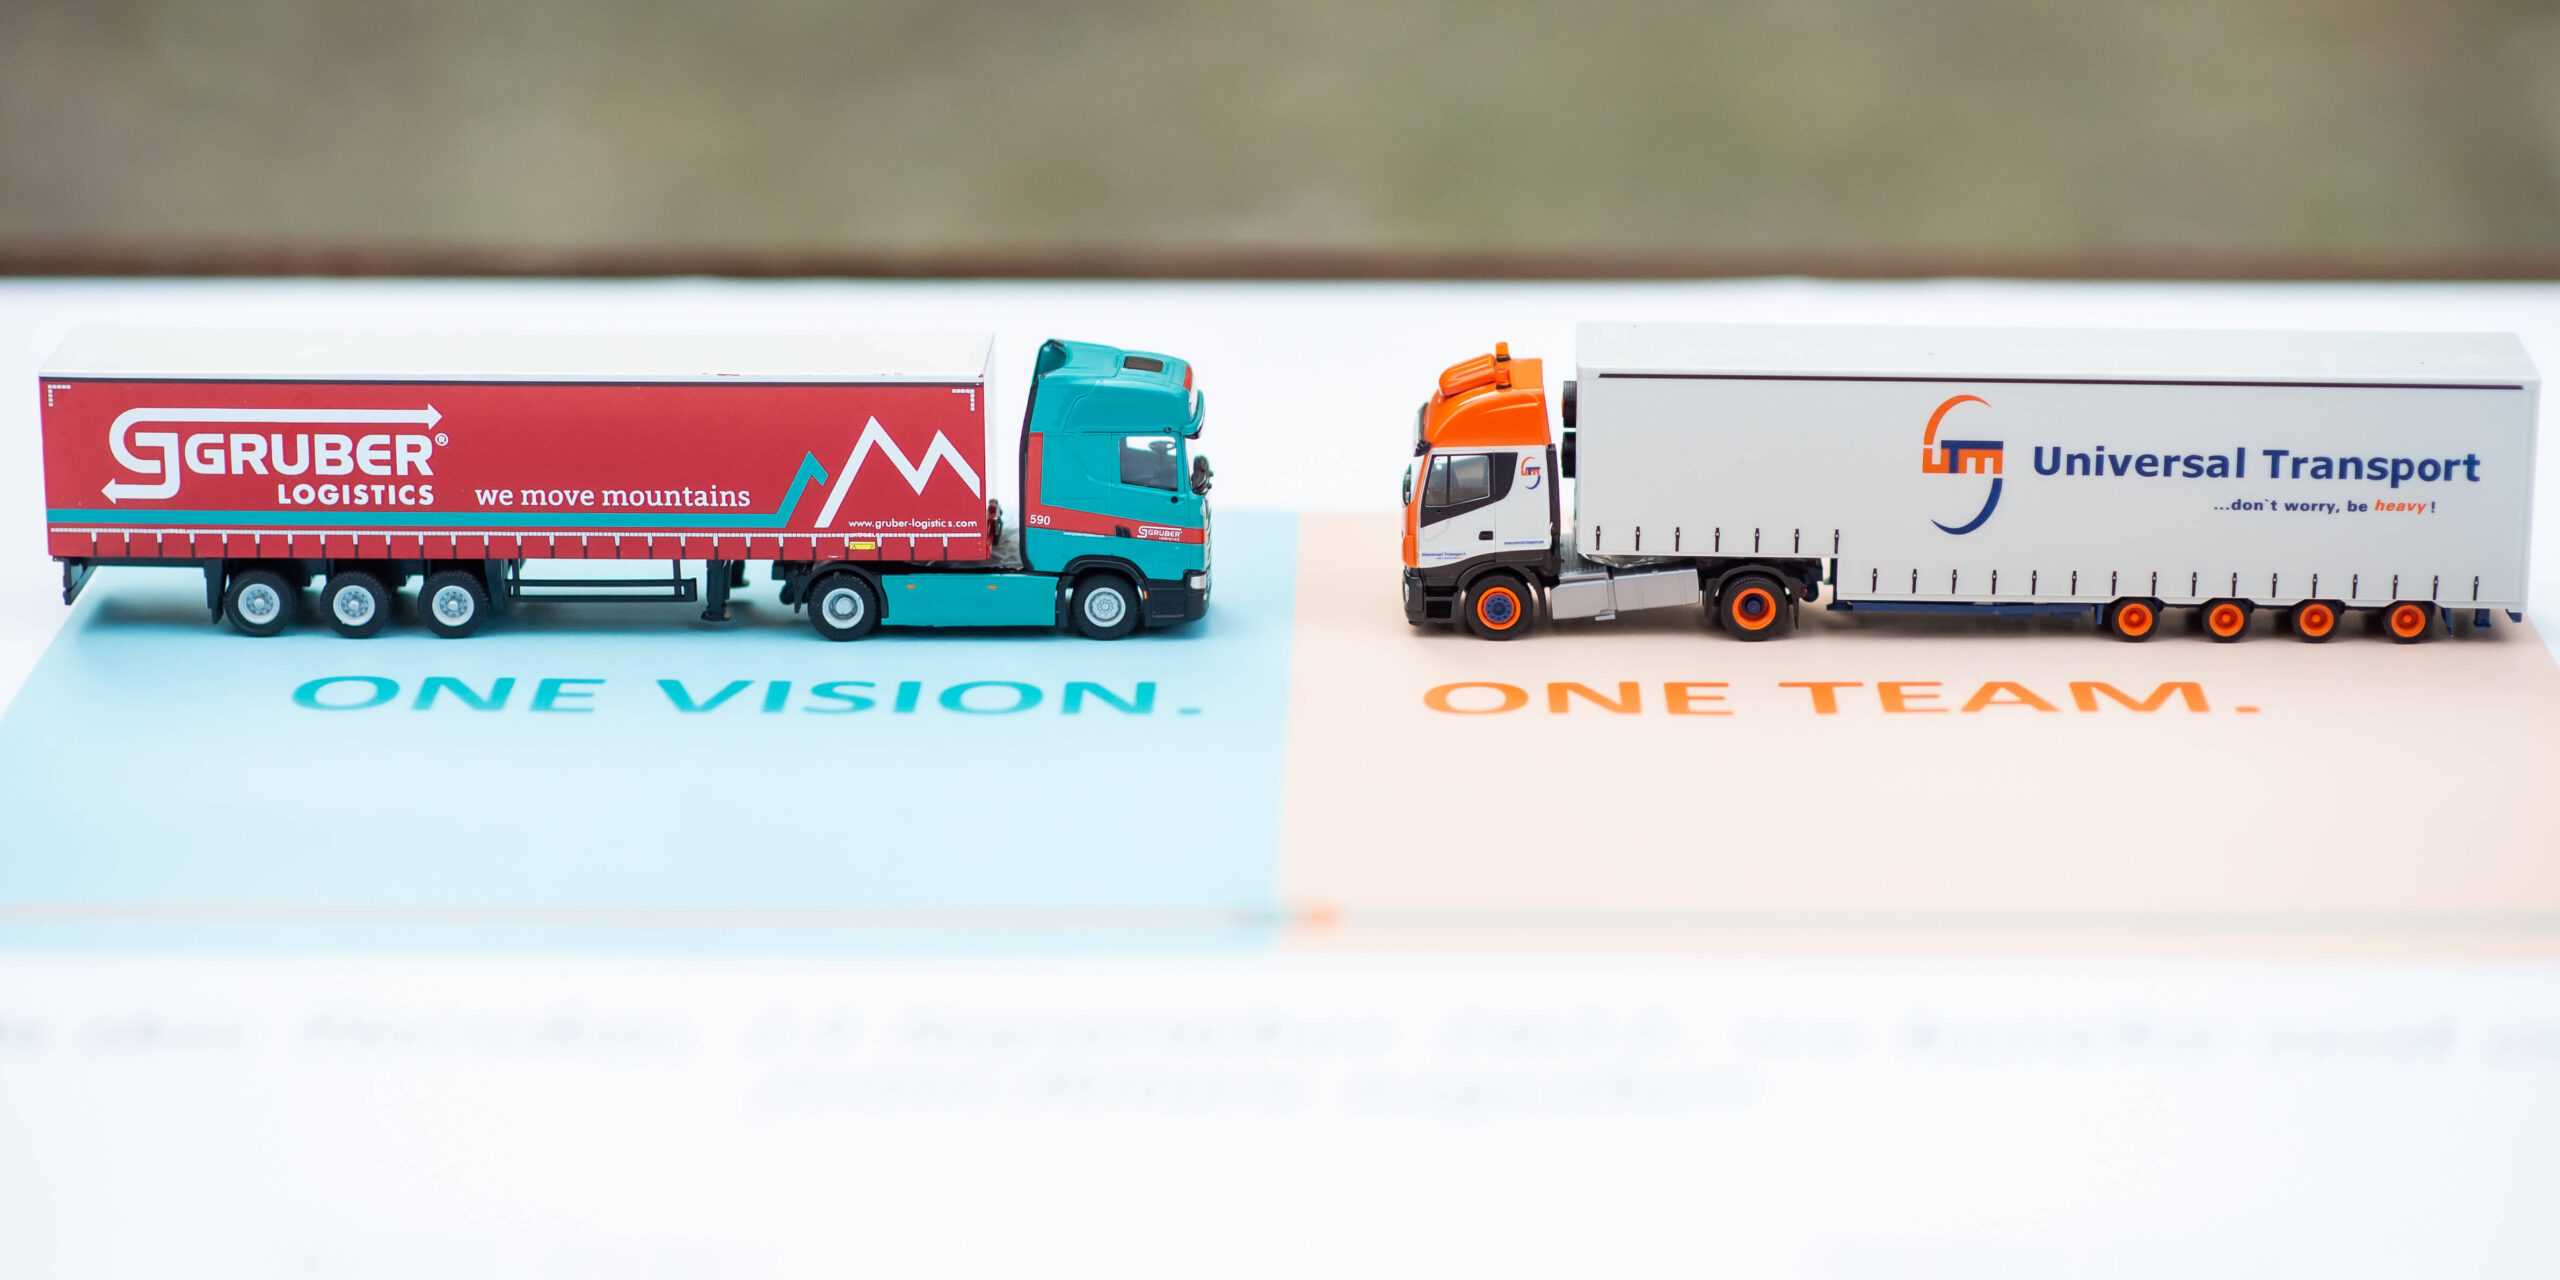 Nasce un nuovo leader nel mercato europeo del trasporto di carichi eccezionali: Gruber Logistics acquisisce Universal Transport